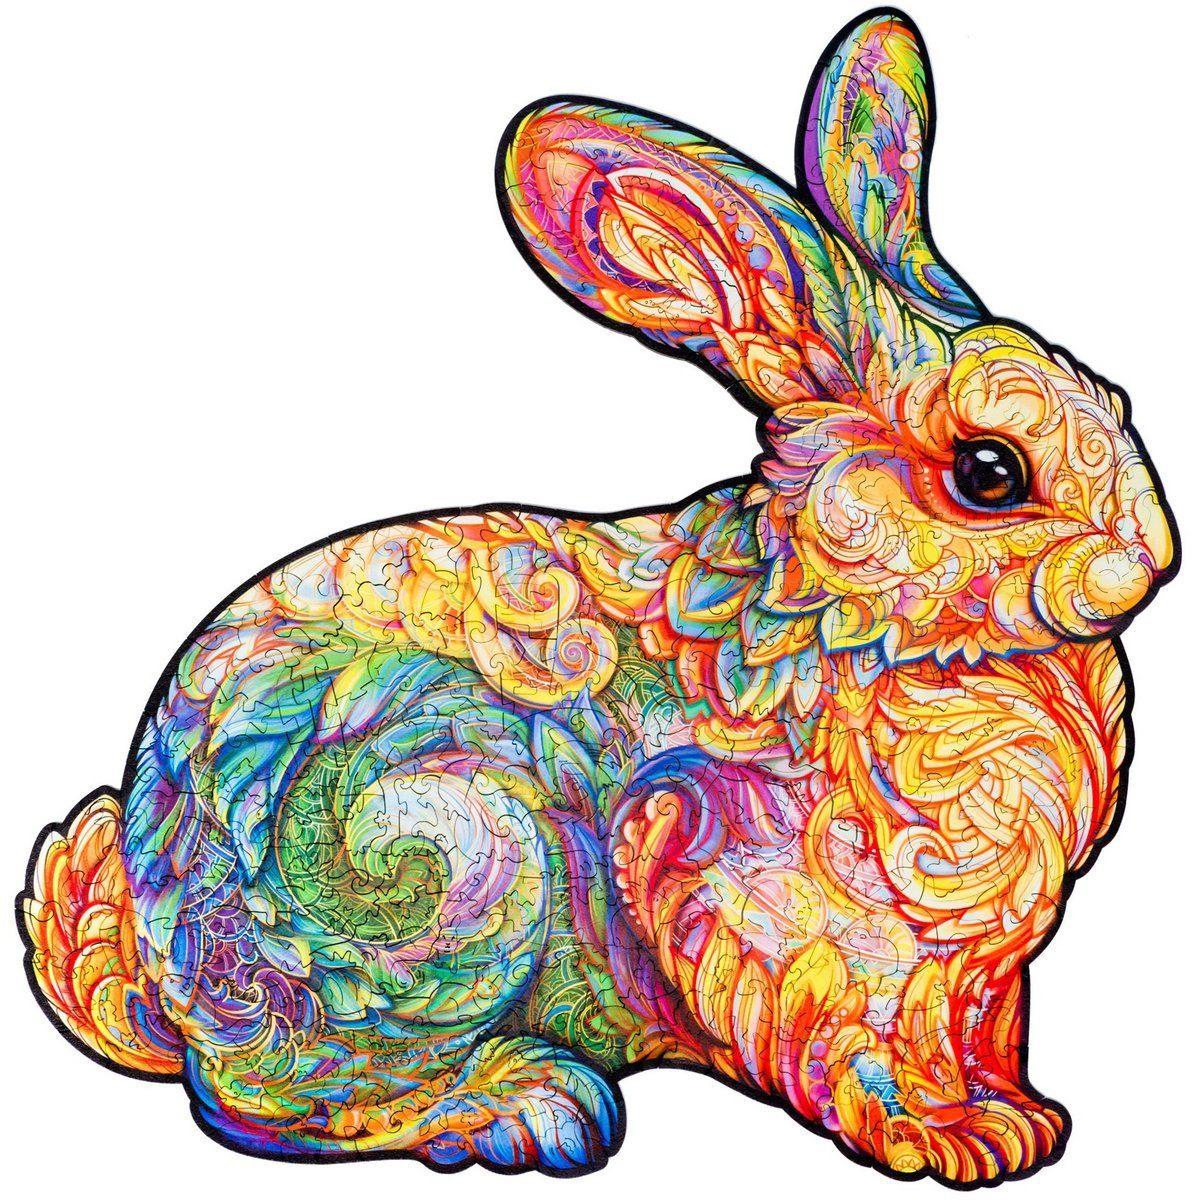 309 – – Kaninchen Kostbares Holzpuzzle Puzzle Unidragon Tier Teile, UNIDRAGON Puzzleteile